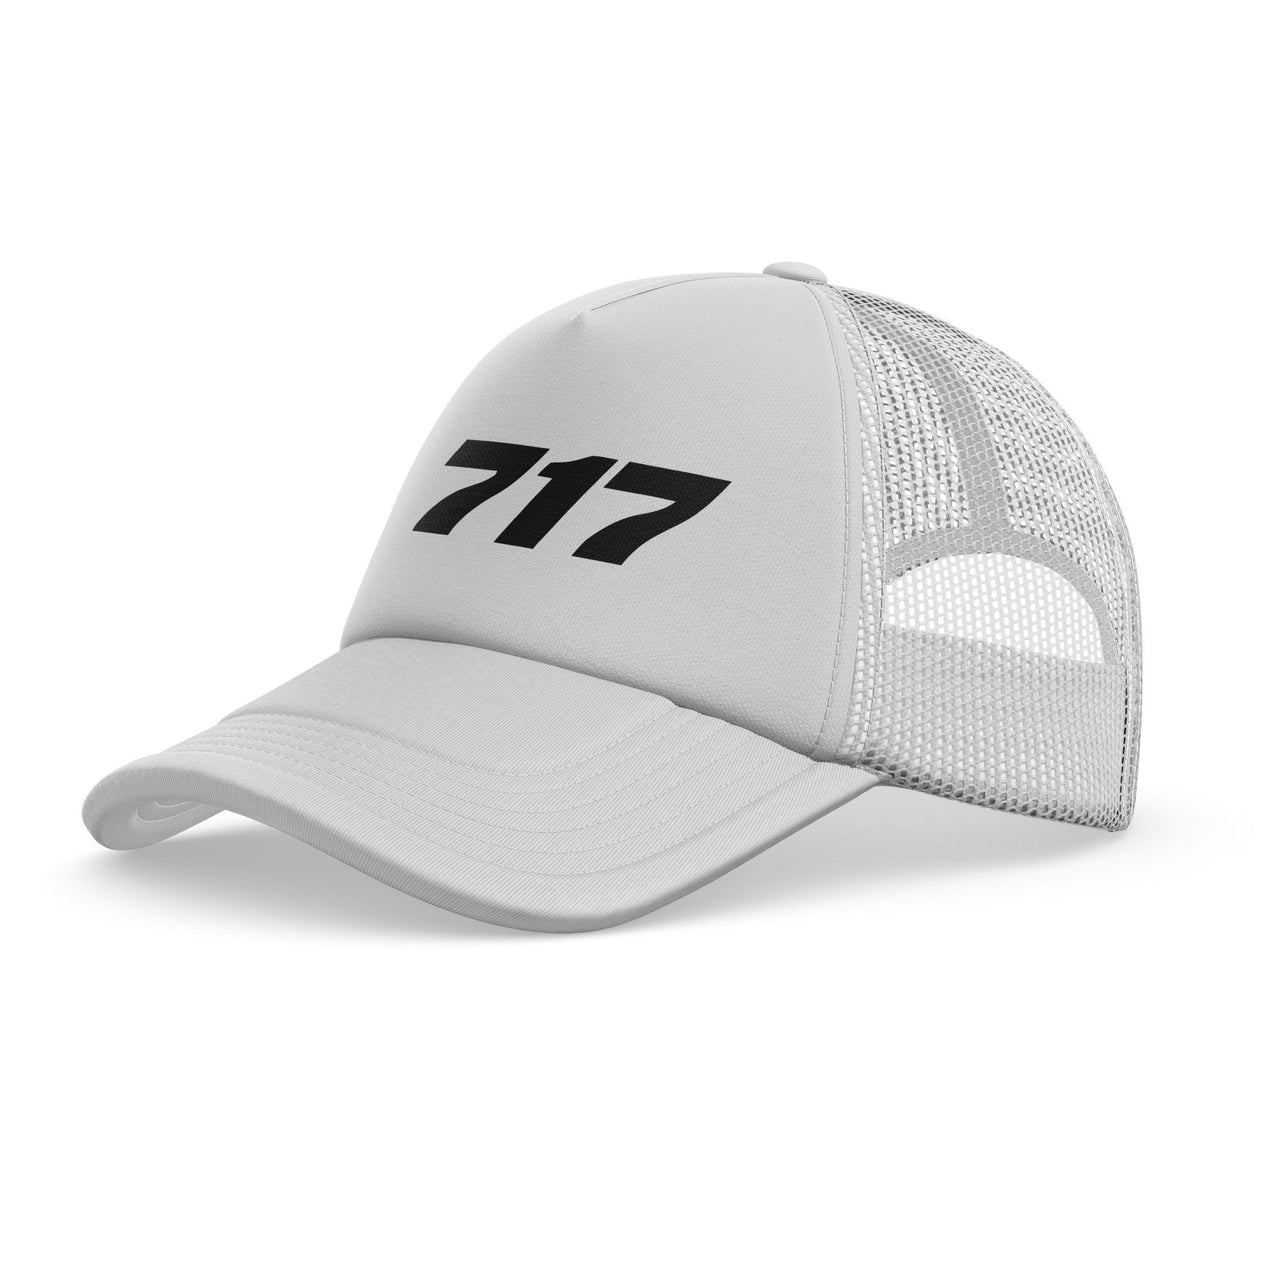 717 Flat Text Designed Trucker Caps & Hats